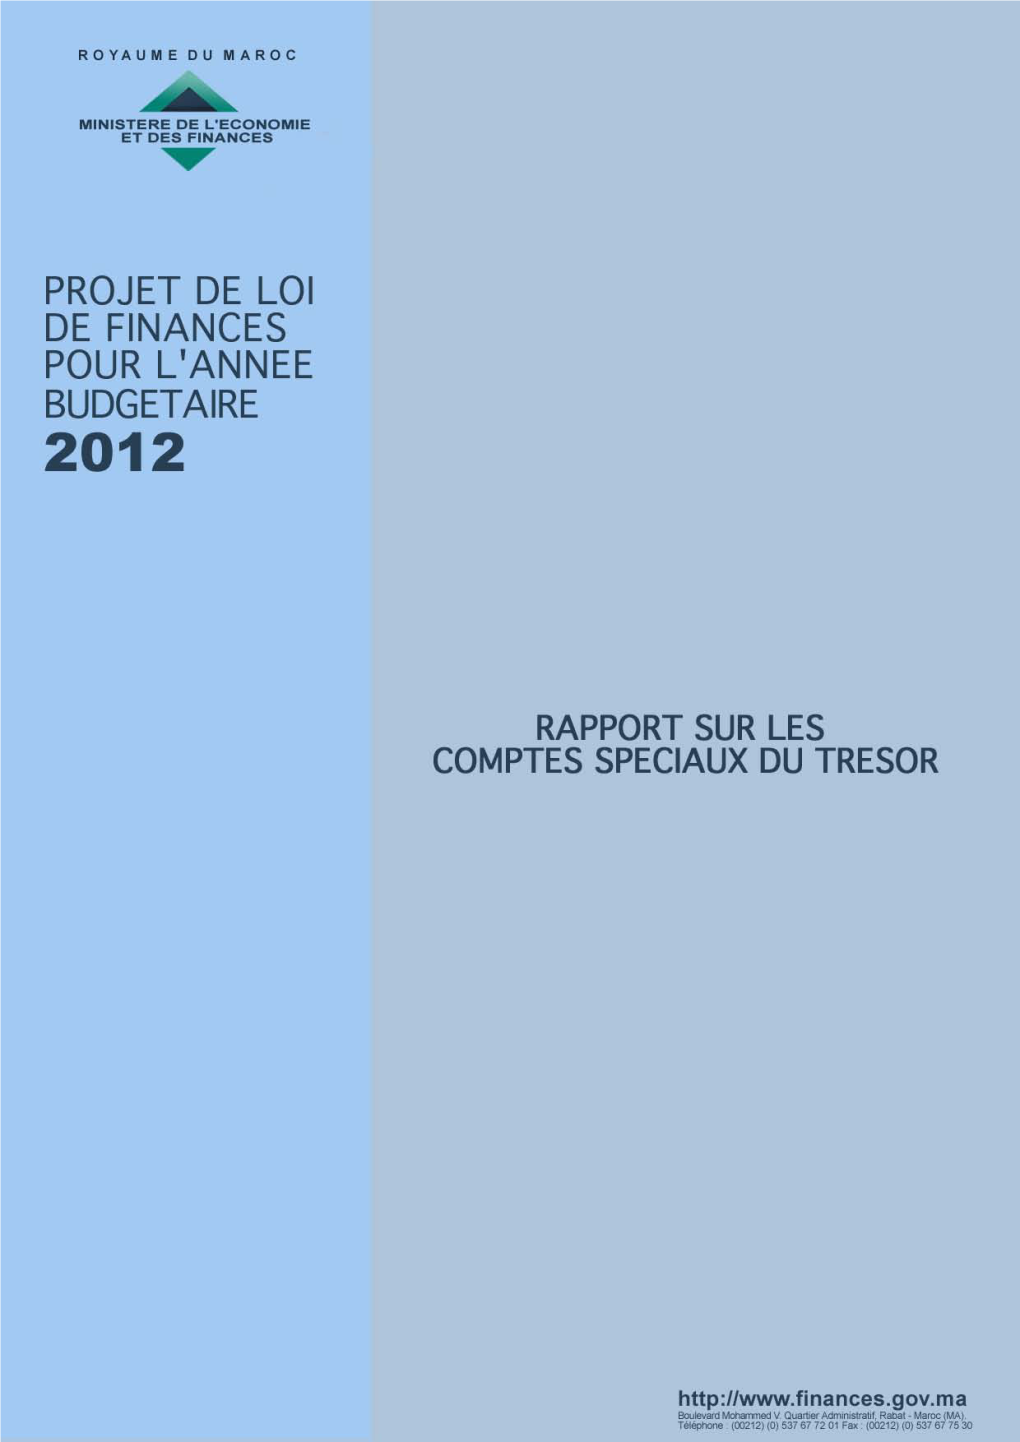 Rapport Sur Les Comptes Spéciaux Du Trésor (CST)